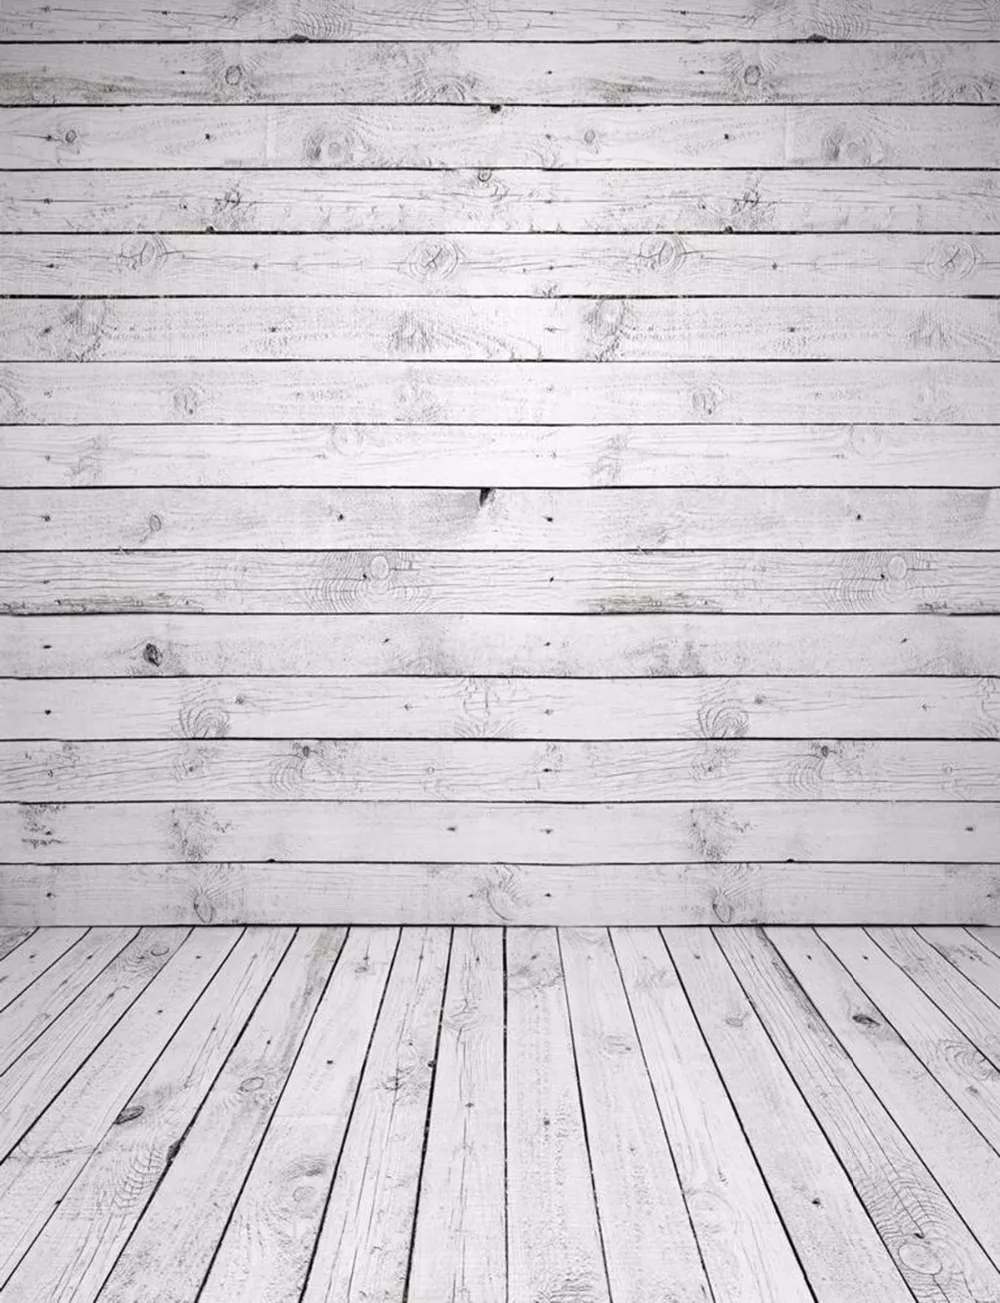 الفينيل التصوير خلفية الخشب جدار الطابق خمر ألواح خشبية الاطفال الأطفال الوليد الطفل صور الدعائم استوديو بوث الخلفيات